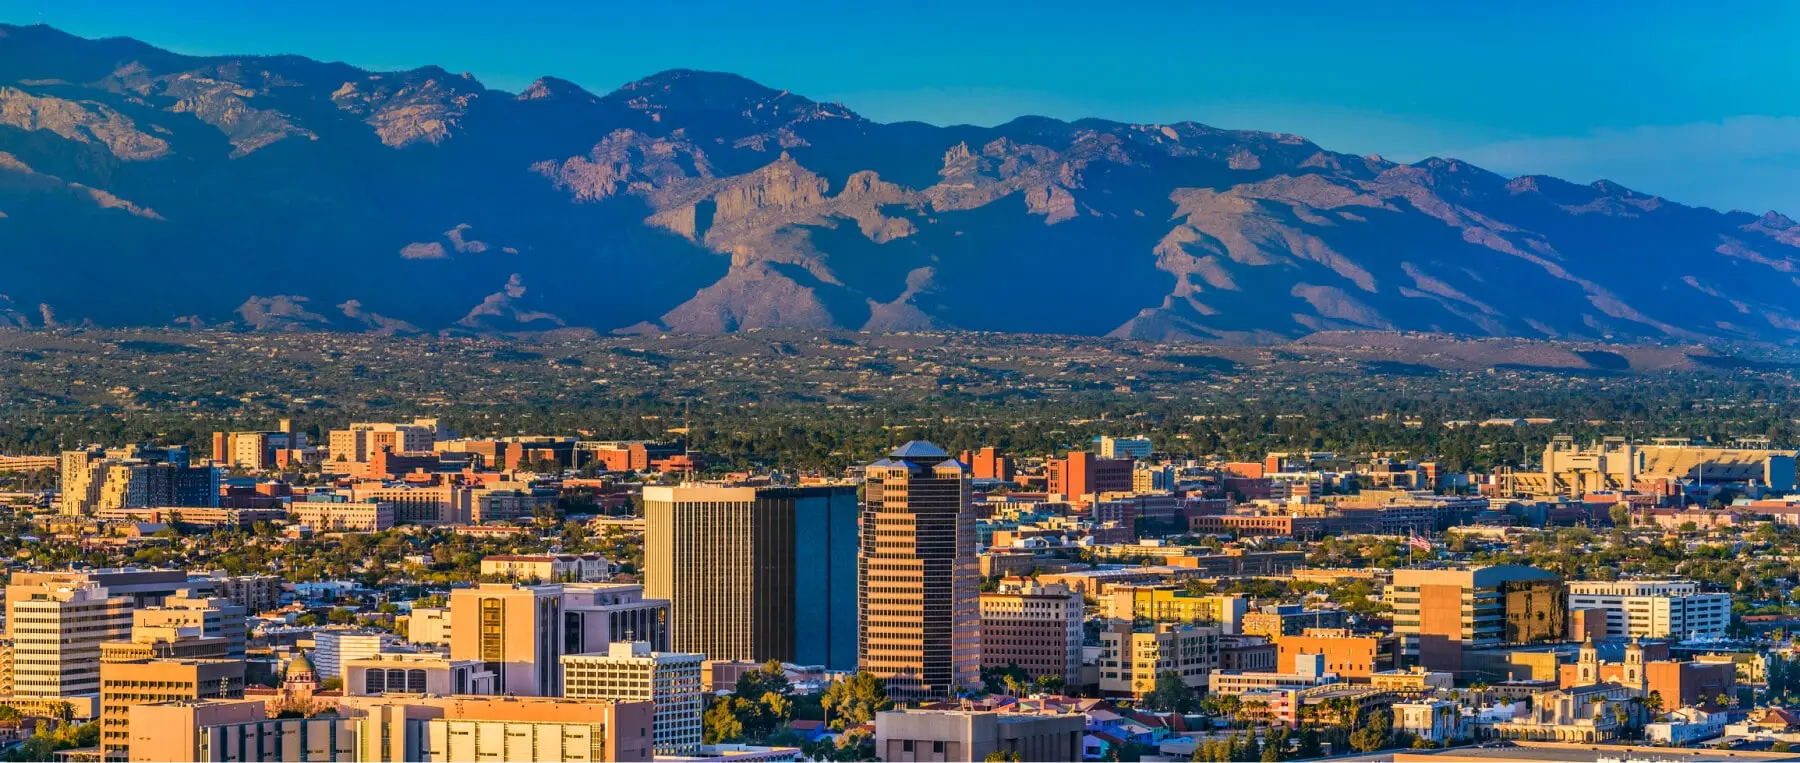 Tucson Location Image